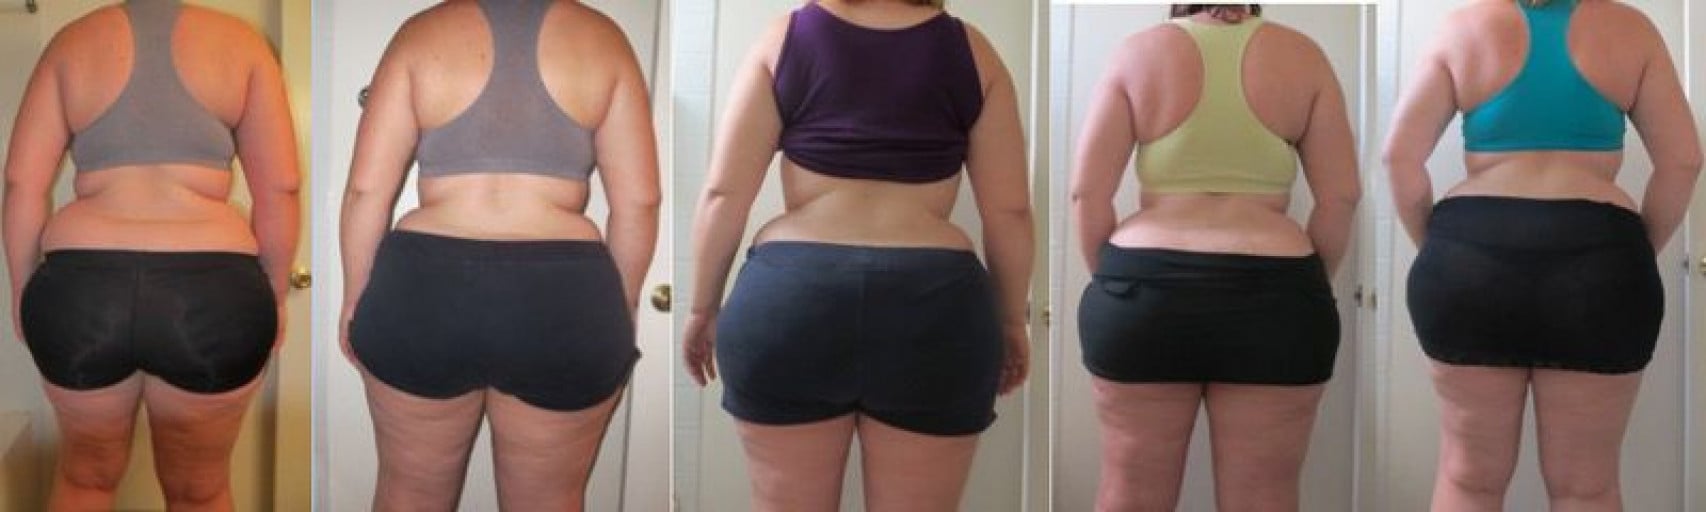 5 feet 11 Female Progress Pics of 19 lbs Fat Loss 282 lbs to 263 lbs